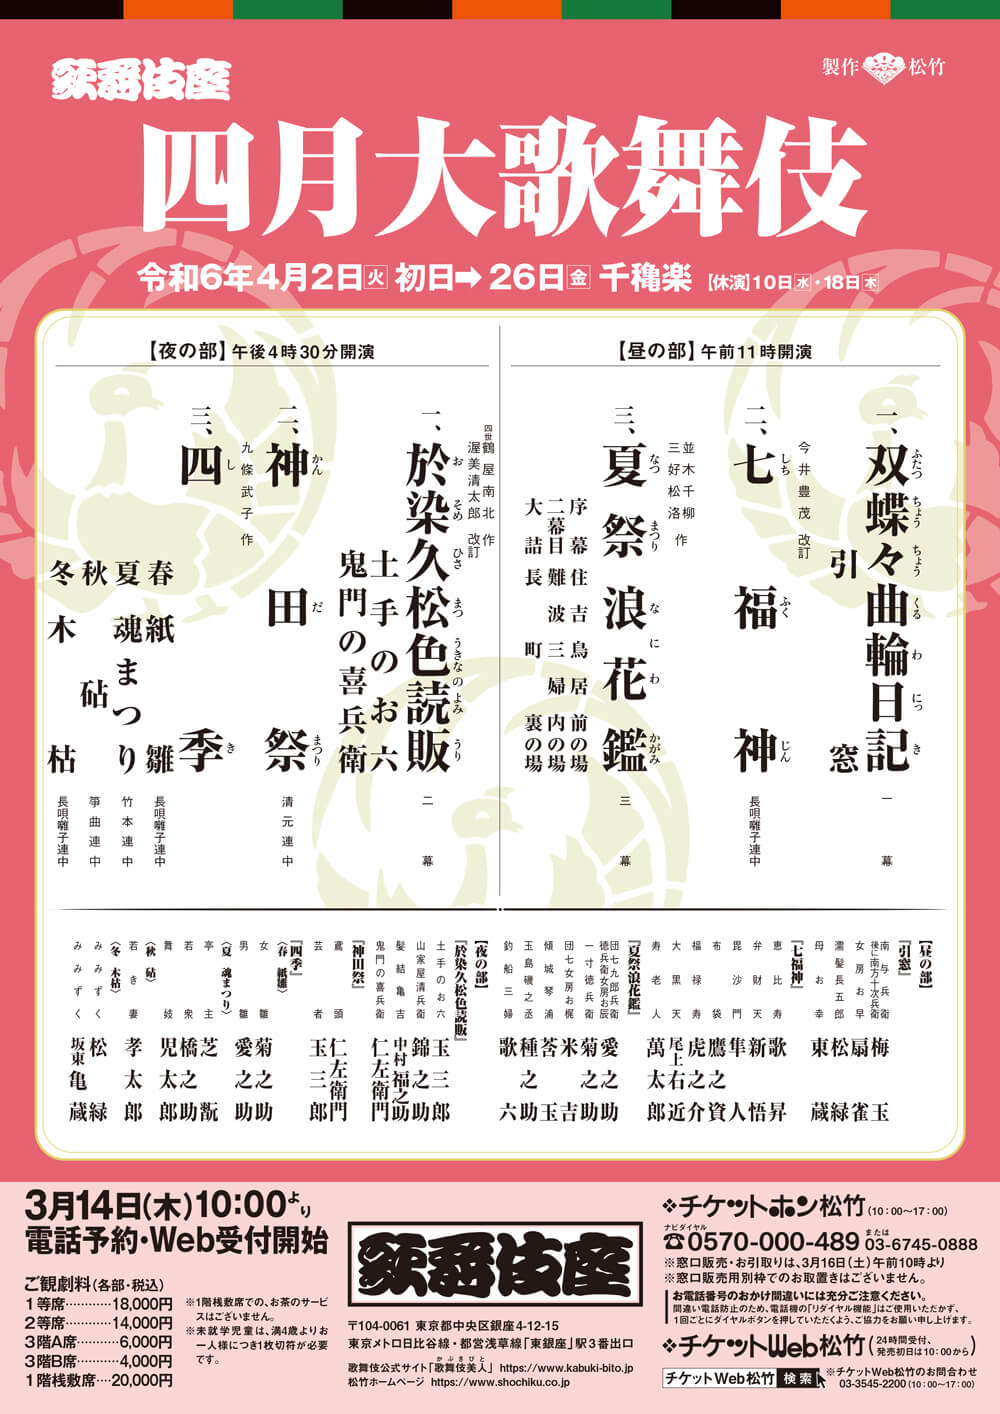 April Program at the Kabukiza Theatre